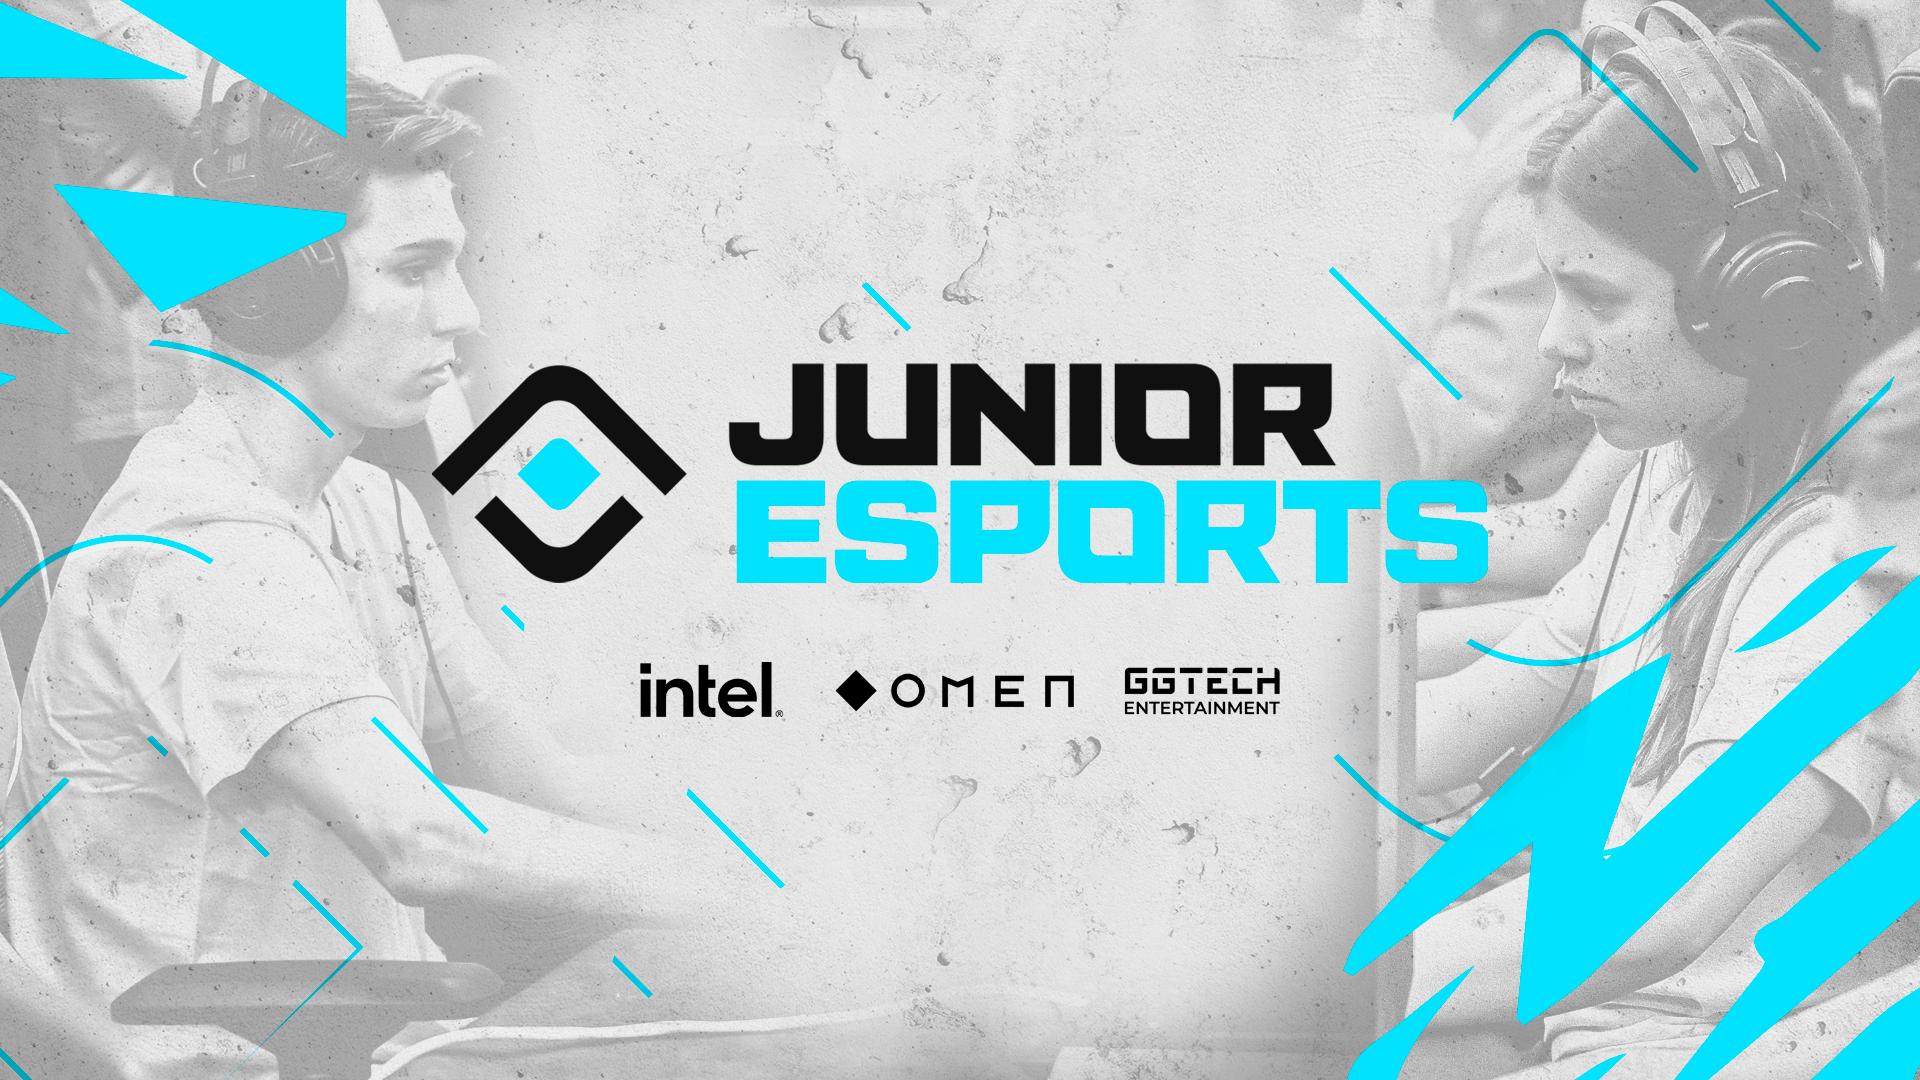 Imagen promocional del rebranding de JUNIOR Esports